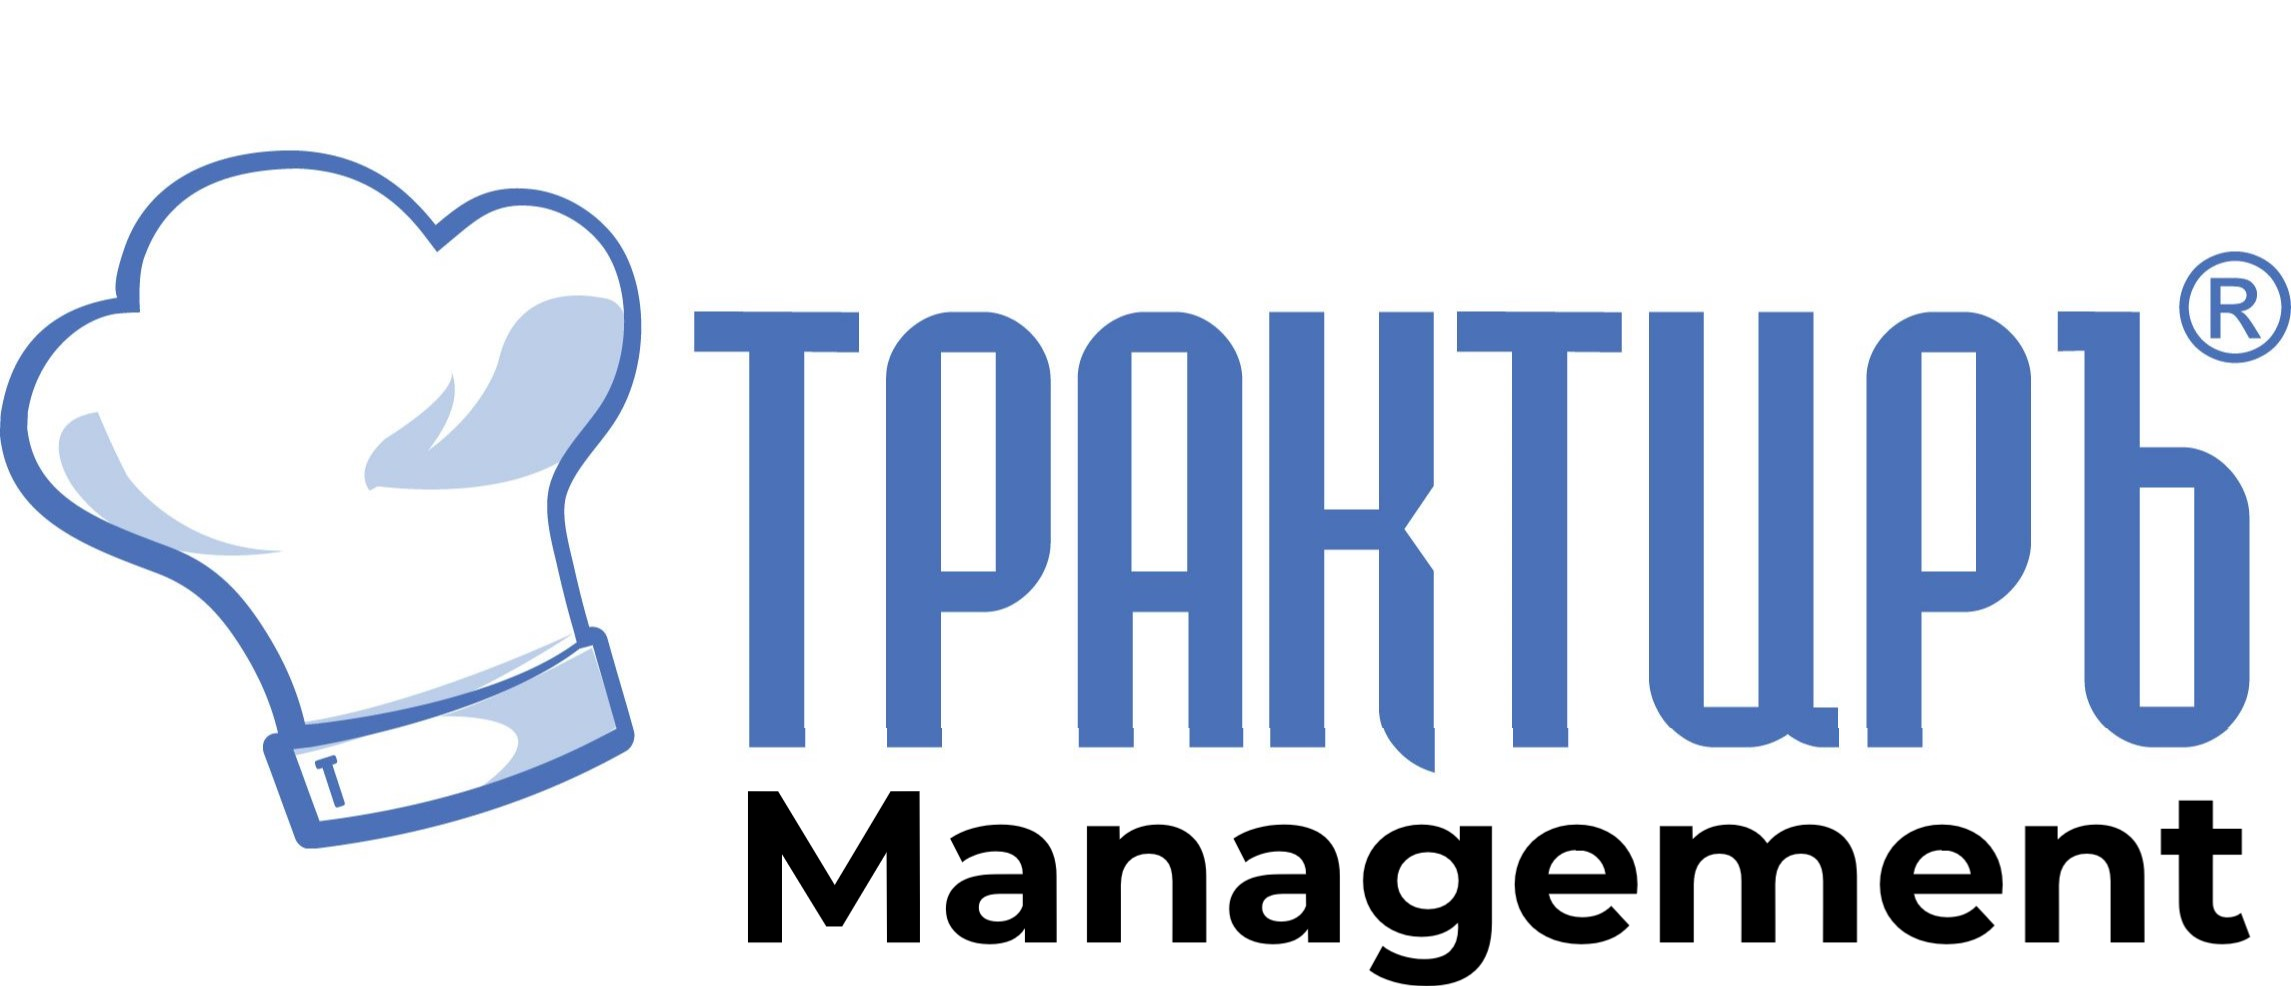 Трактиръ: Management в Омске